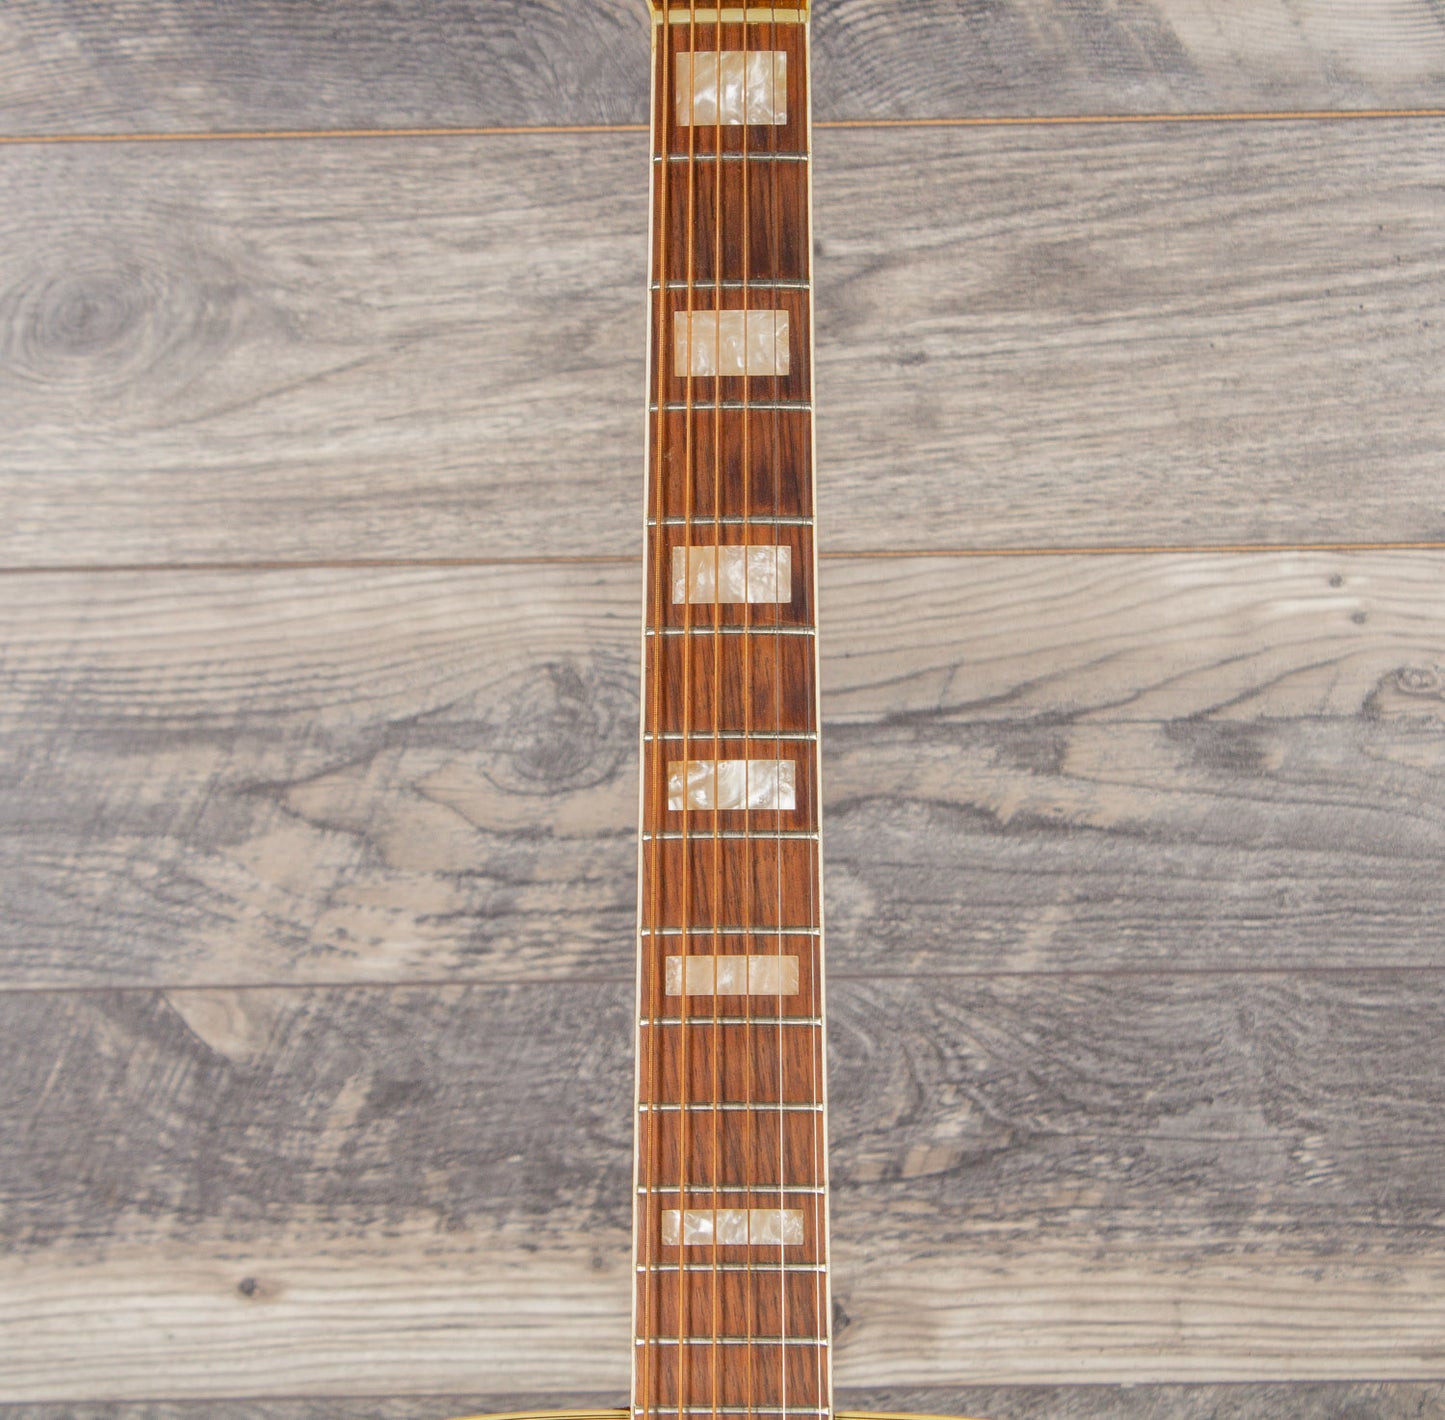 1966 Fender Kingman